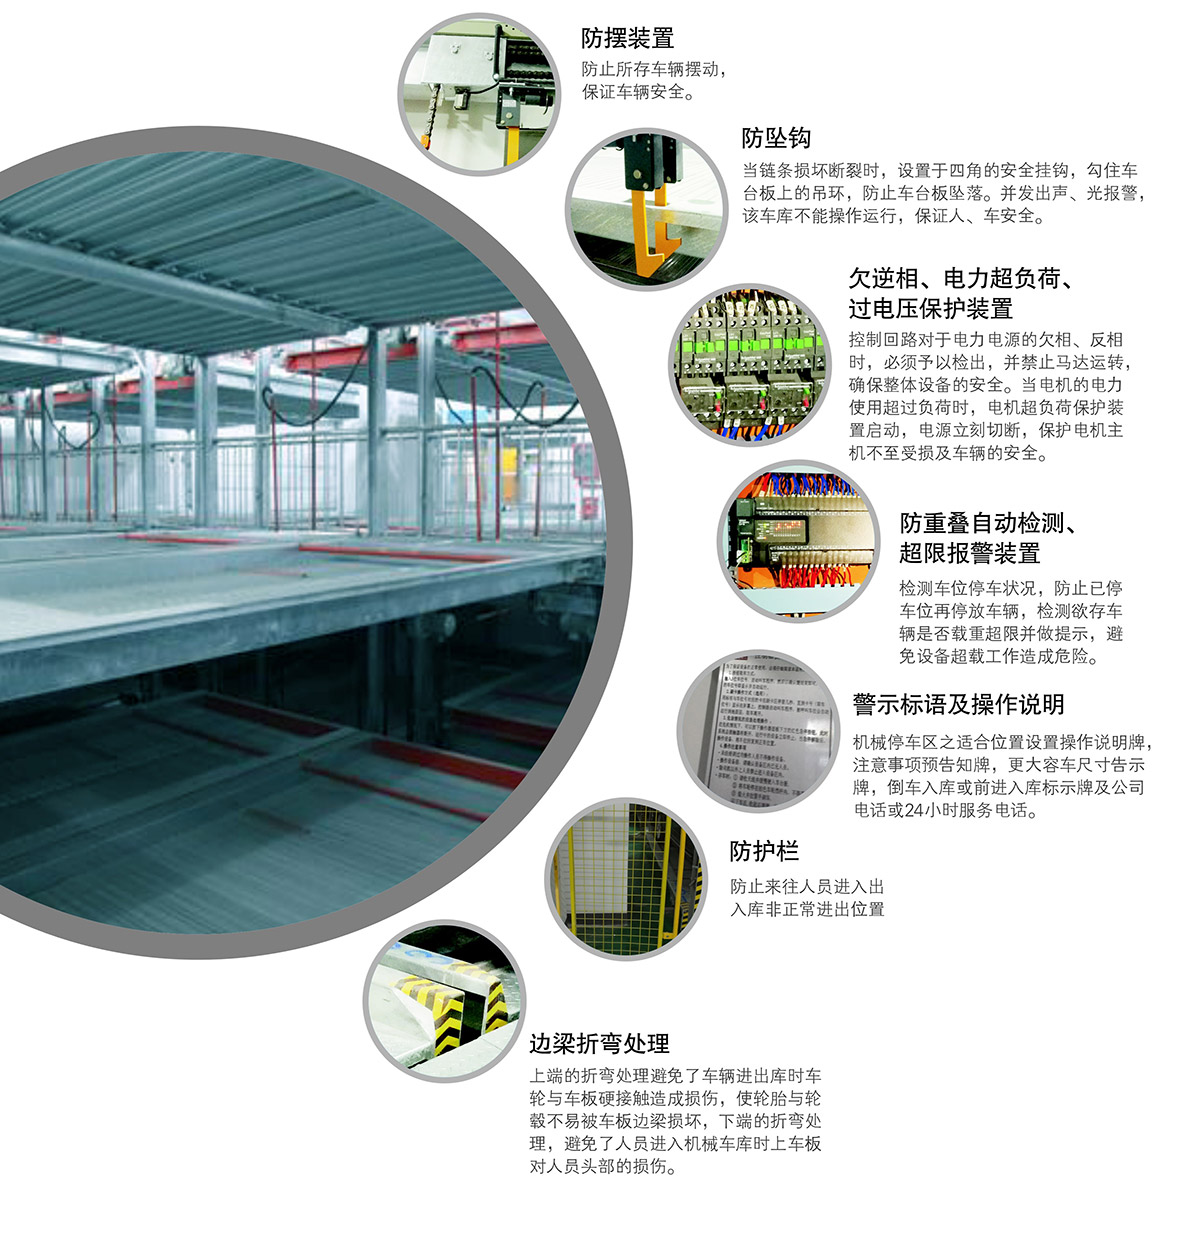 重庆负一正一地坑PSH2D1二层升降横移类机械式立体停车设备安全防护.jpg